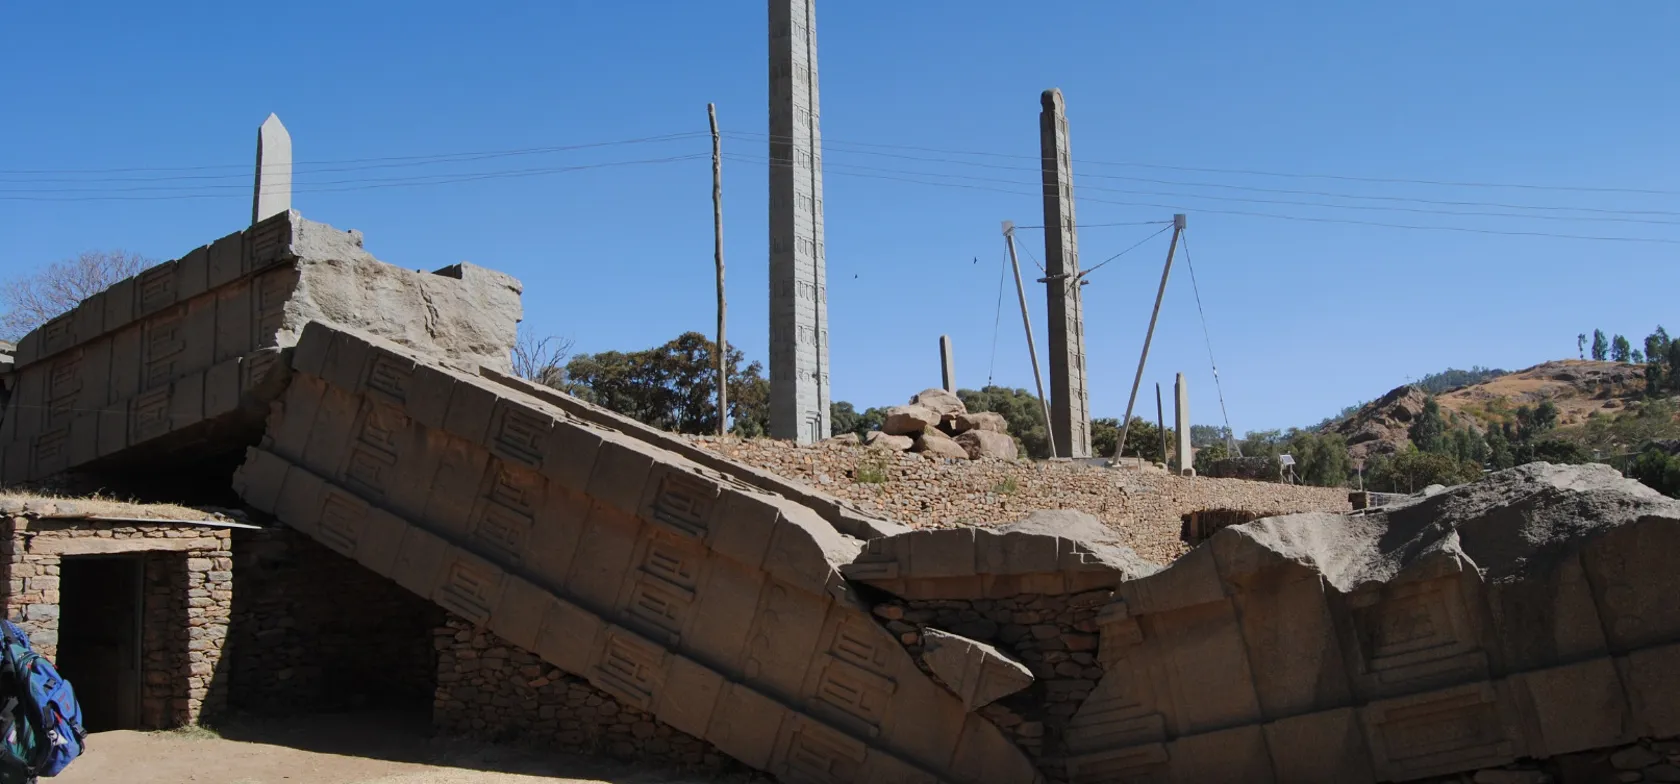 Ifølge overleveringer findes Pagtens Ark i dag i den nordetiopiske by Axum. Foto Viktors Farmor